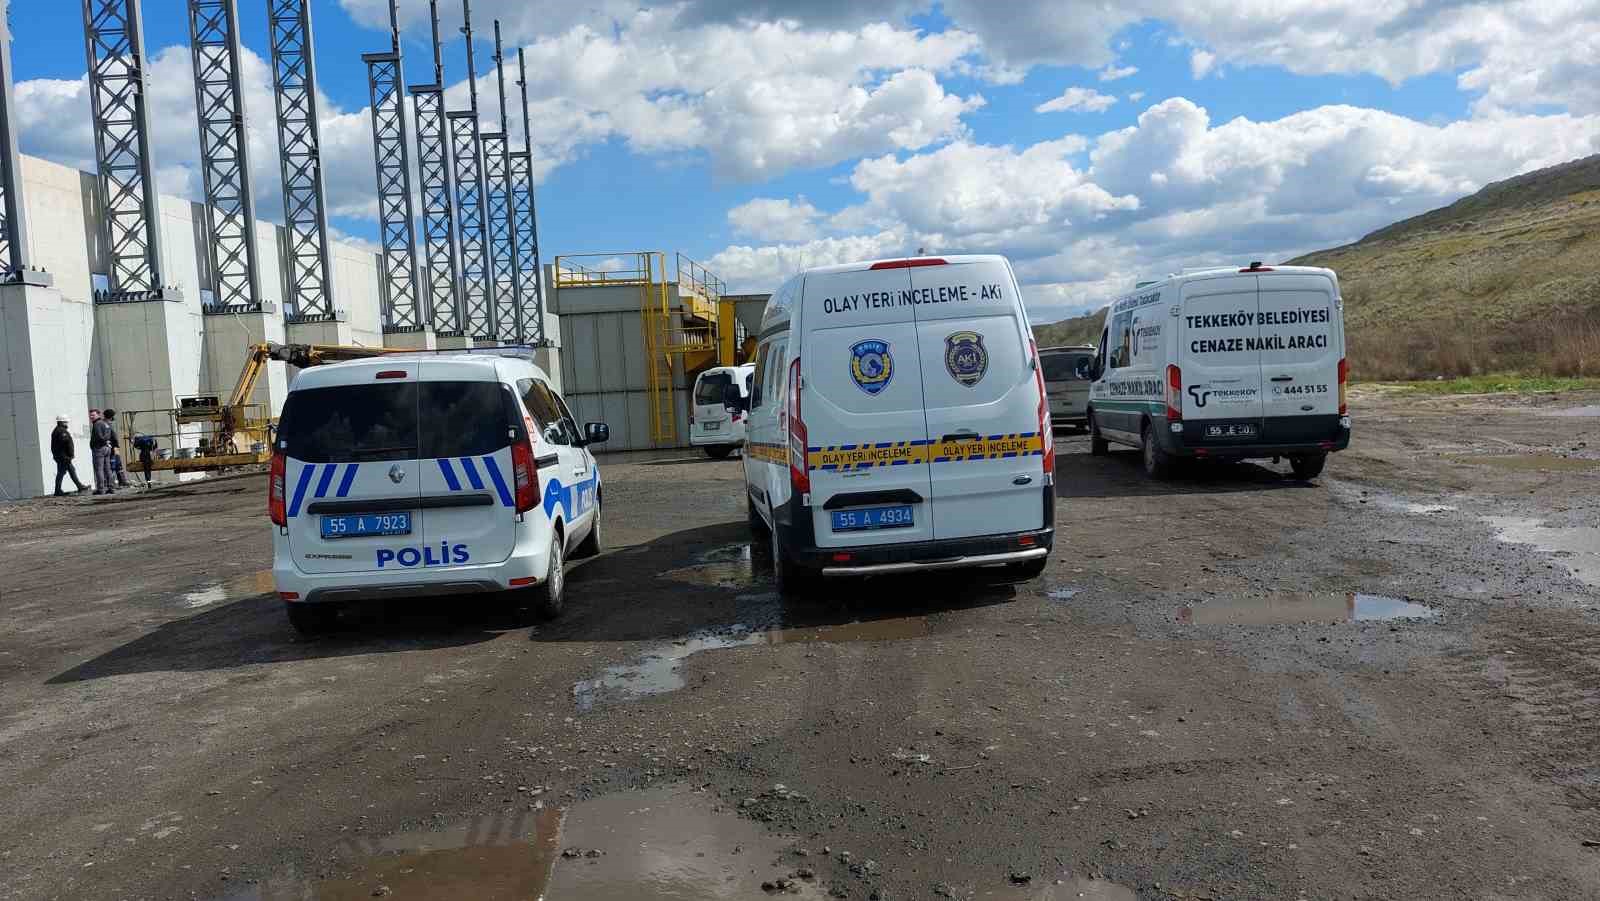 Yeşilyurt Limanı’nda iş kazası: İnşaattan düşen 28 yaşındaki kalıp ustası hayatını kaybetti
